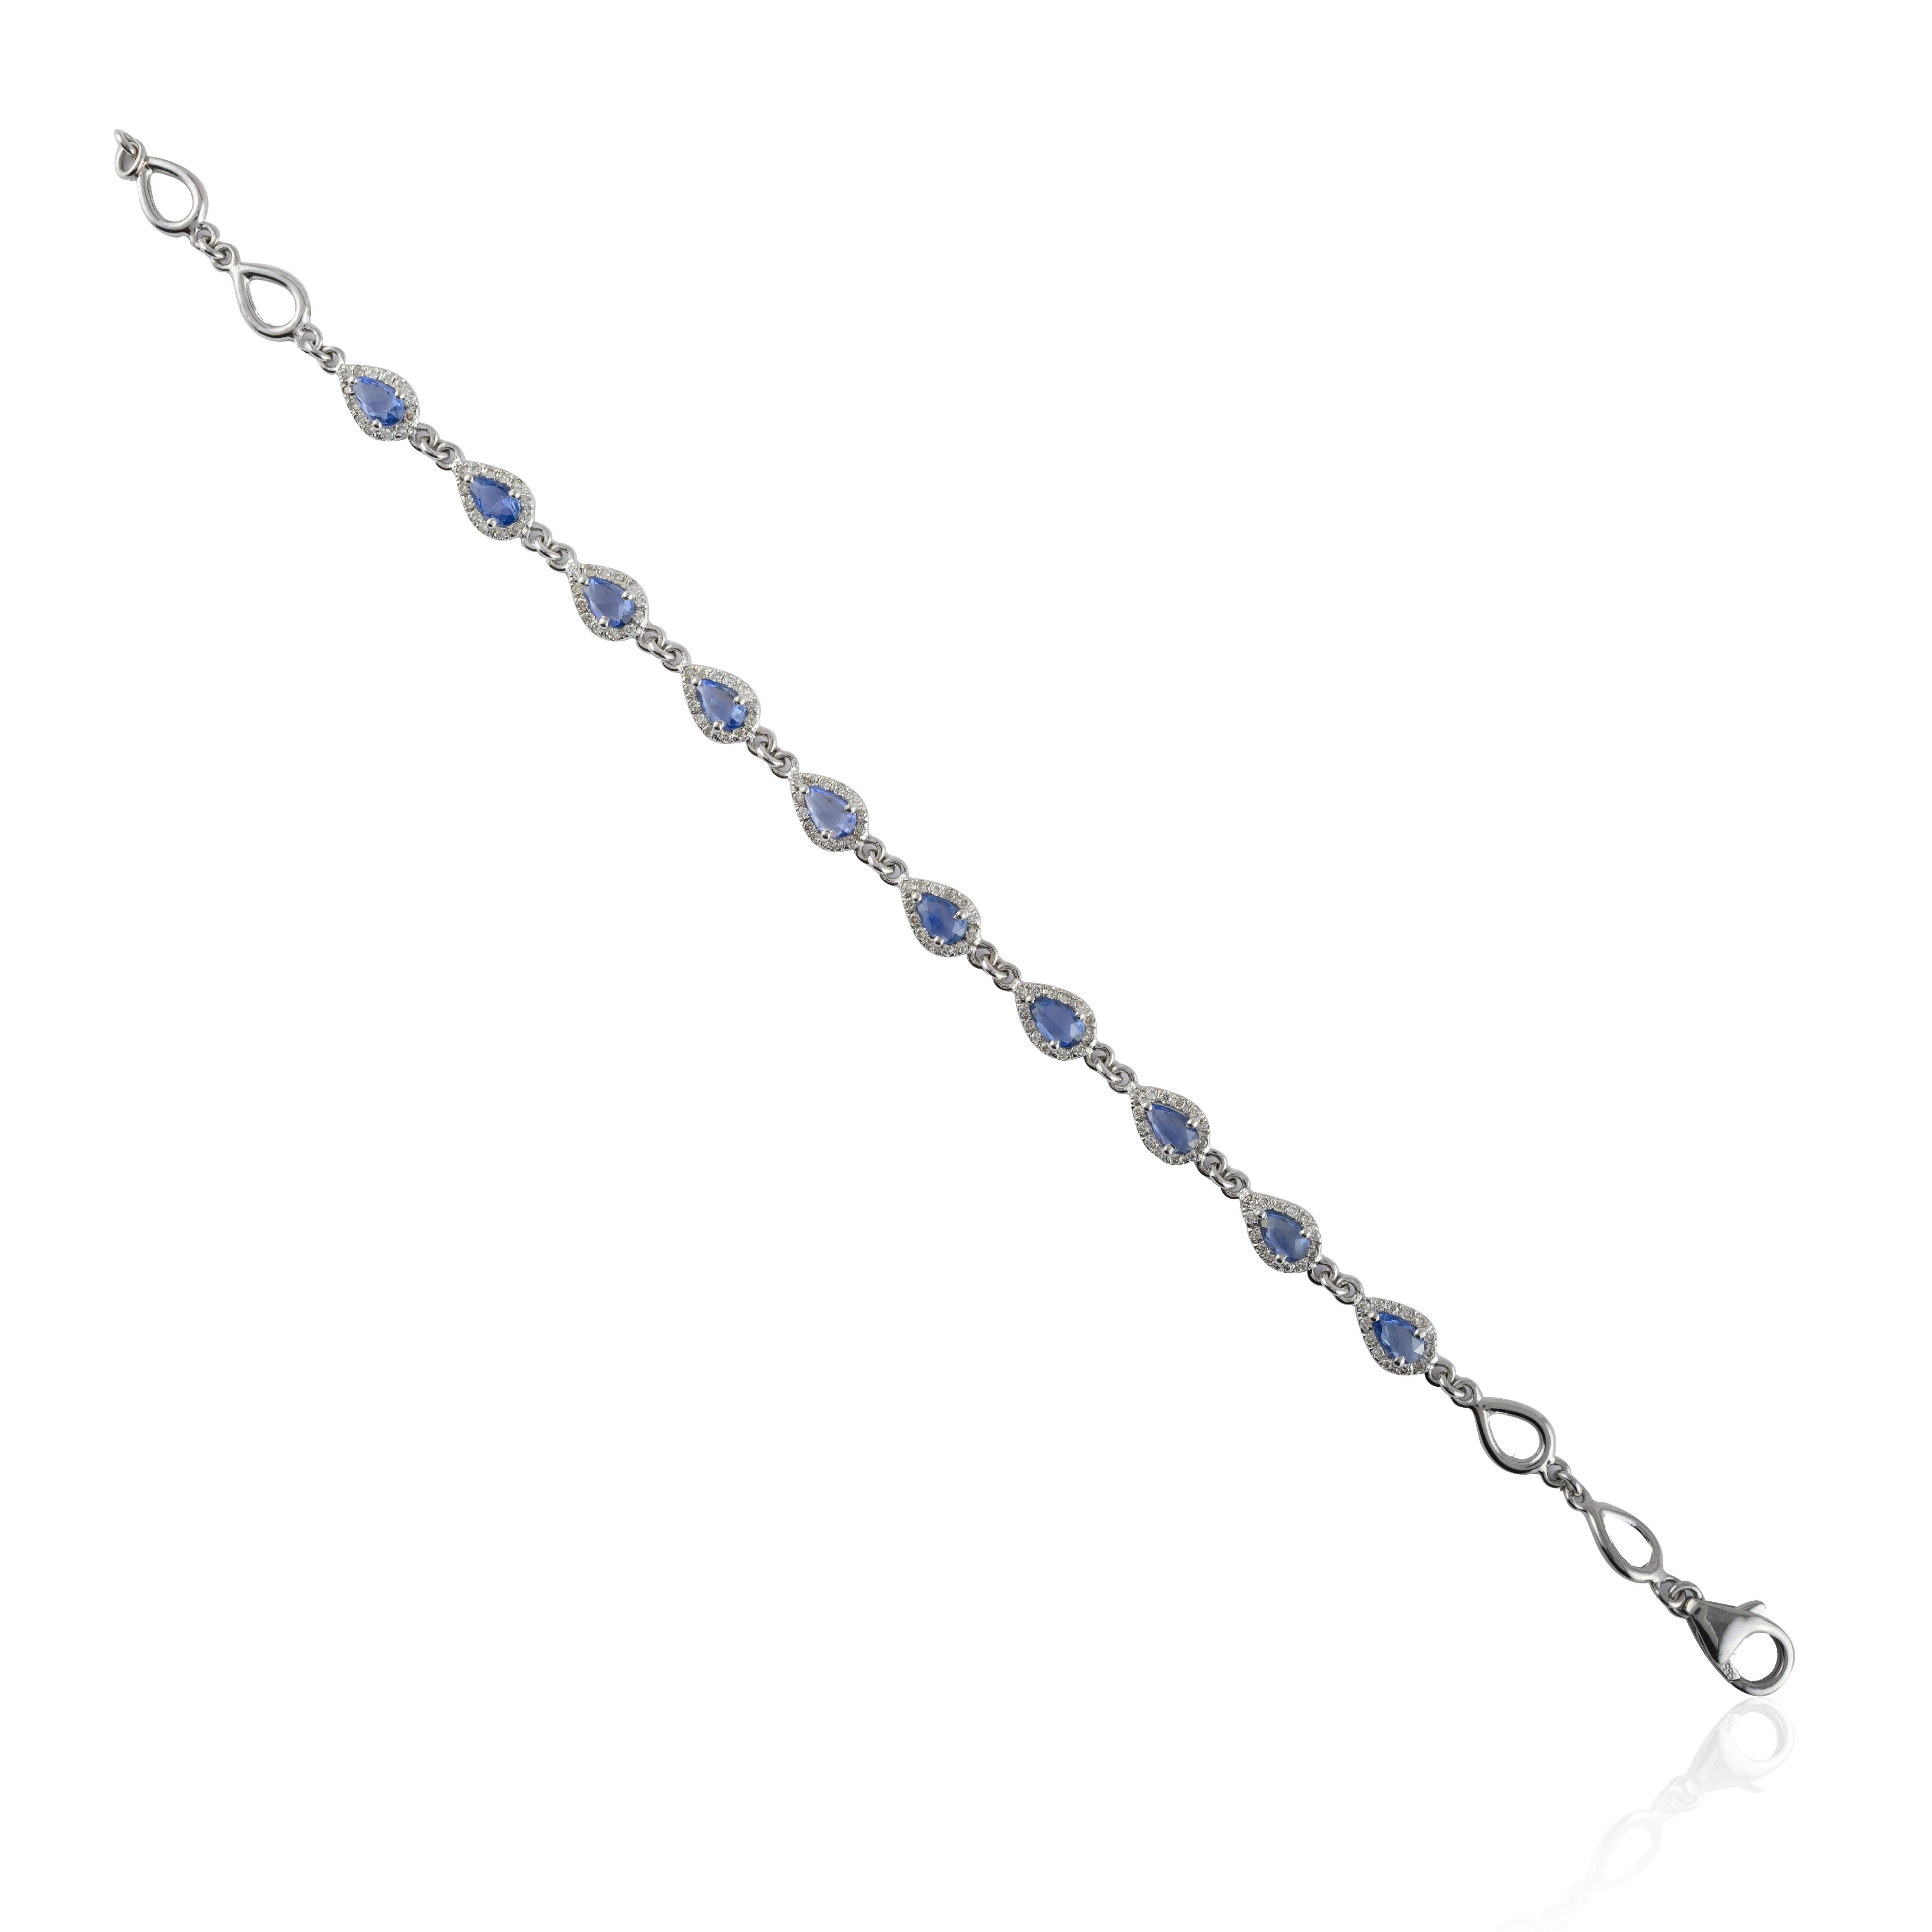 Dieses handgefertigte Saphir- und Diamantarmband aus 14-karätigem Gold präsentiert 10 endlos funkelnde natürliche blaue Saphire mit einem Gewicht von 2,06 Karat. Es misst 7 Zoll in der Länge. 
Saphir fördert die Konzentration und baut Stress